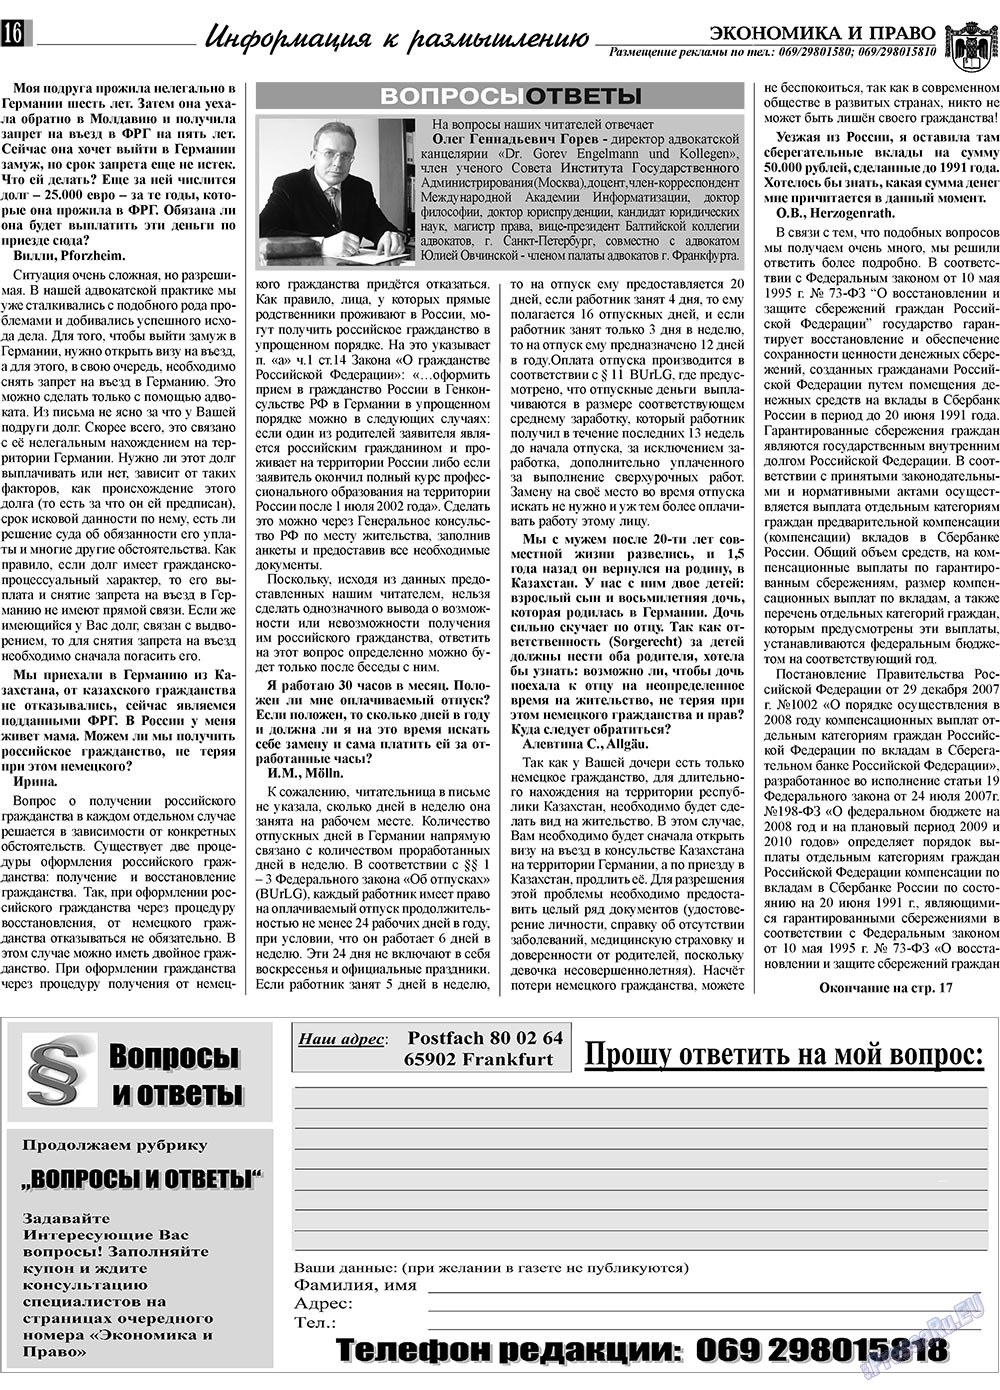 Экономика и право, газета. 2009 №5 стр.16